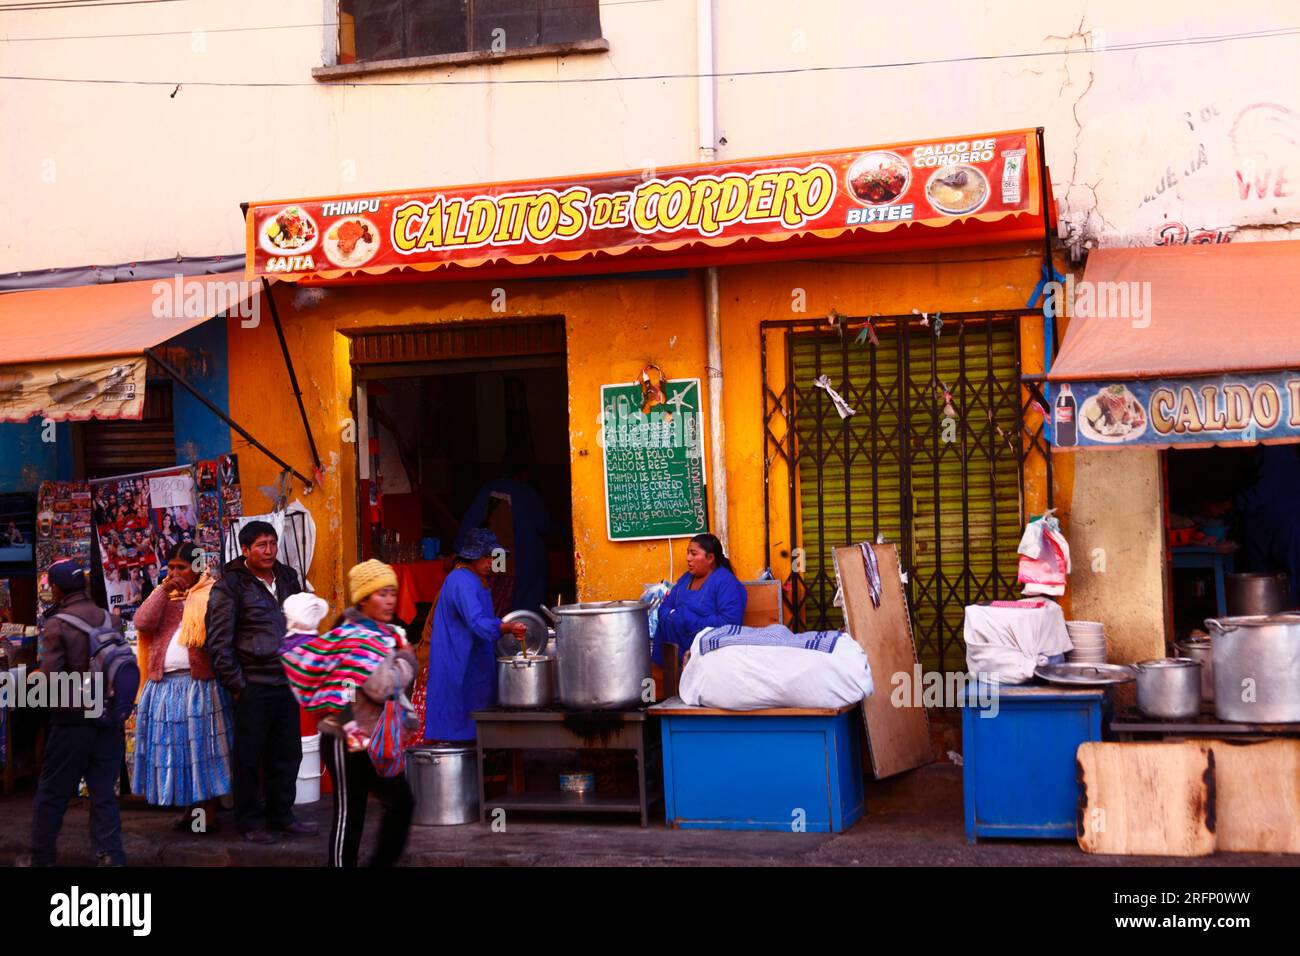 Gente Aymara all'esterno del ristorante locale che vende caldo de cordero / zuppa di agnello e altri piatti tipici boliviani, la Ceja, El alto, Bolivia Foto Stock